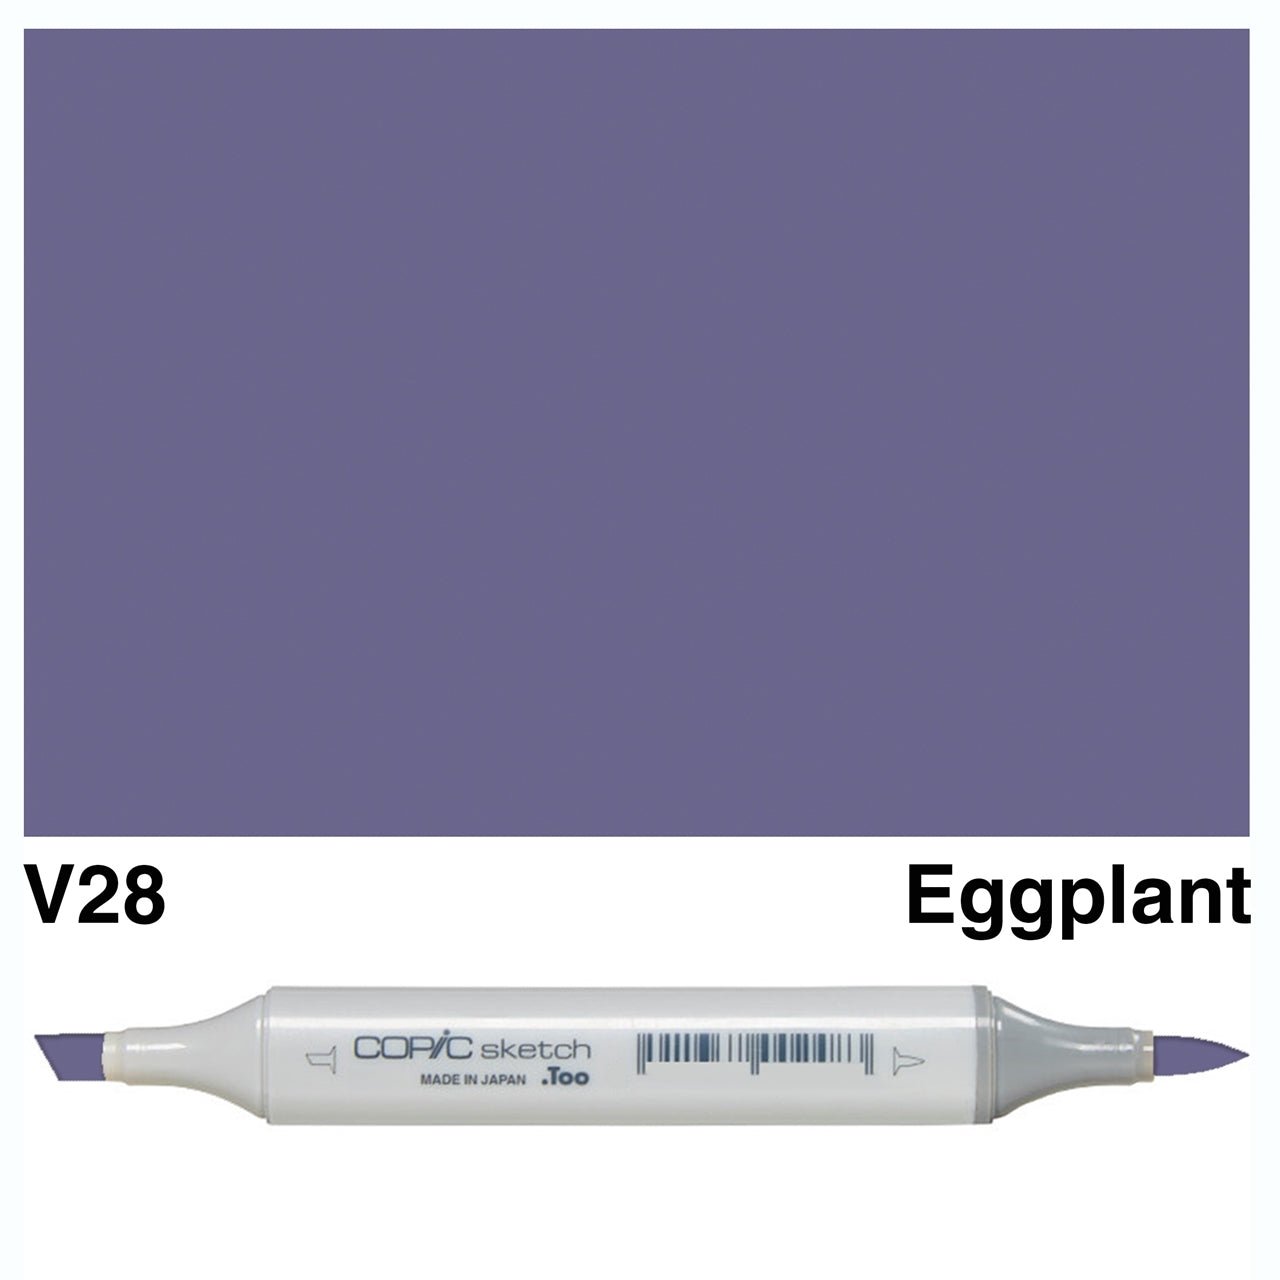 Copic Sketch V28 Eggplant - theartshop.com.au